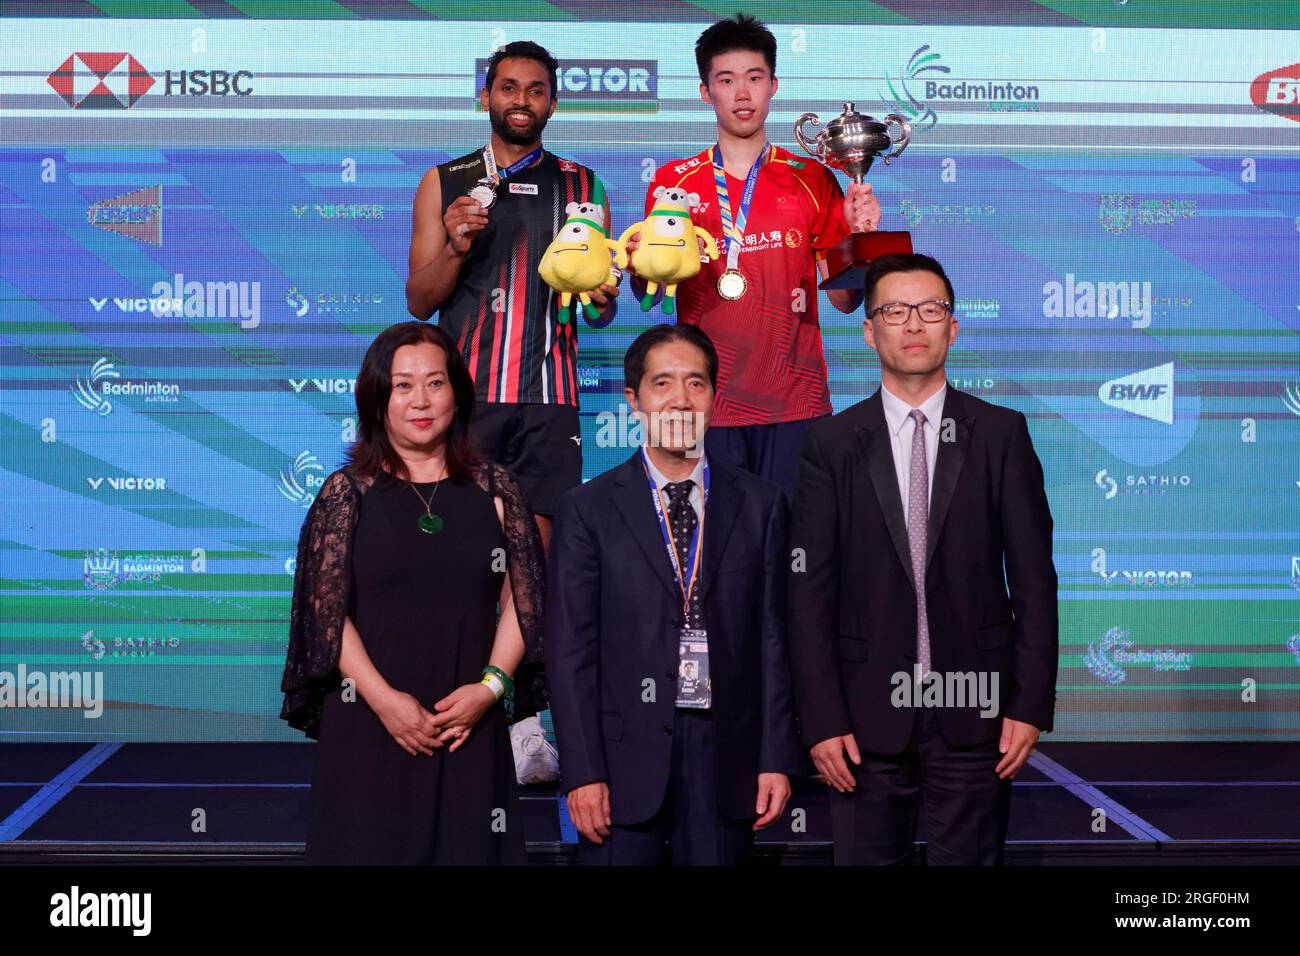 Als Nächstplatzierter posiert Prannoy H. S. aus Indien mit dem Gewinner Weng Hong Yang aus China nach dem Singles-Finale der SATHIO-GRUPPE Australian Badminton O. Stockfoto